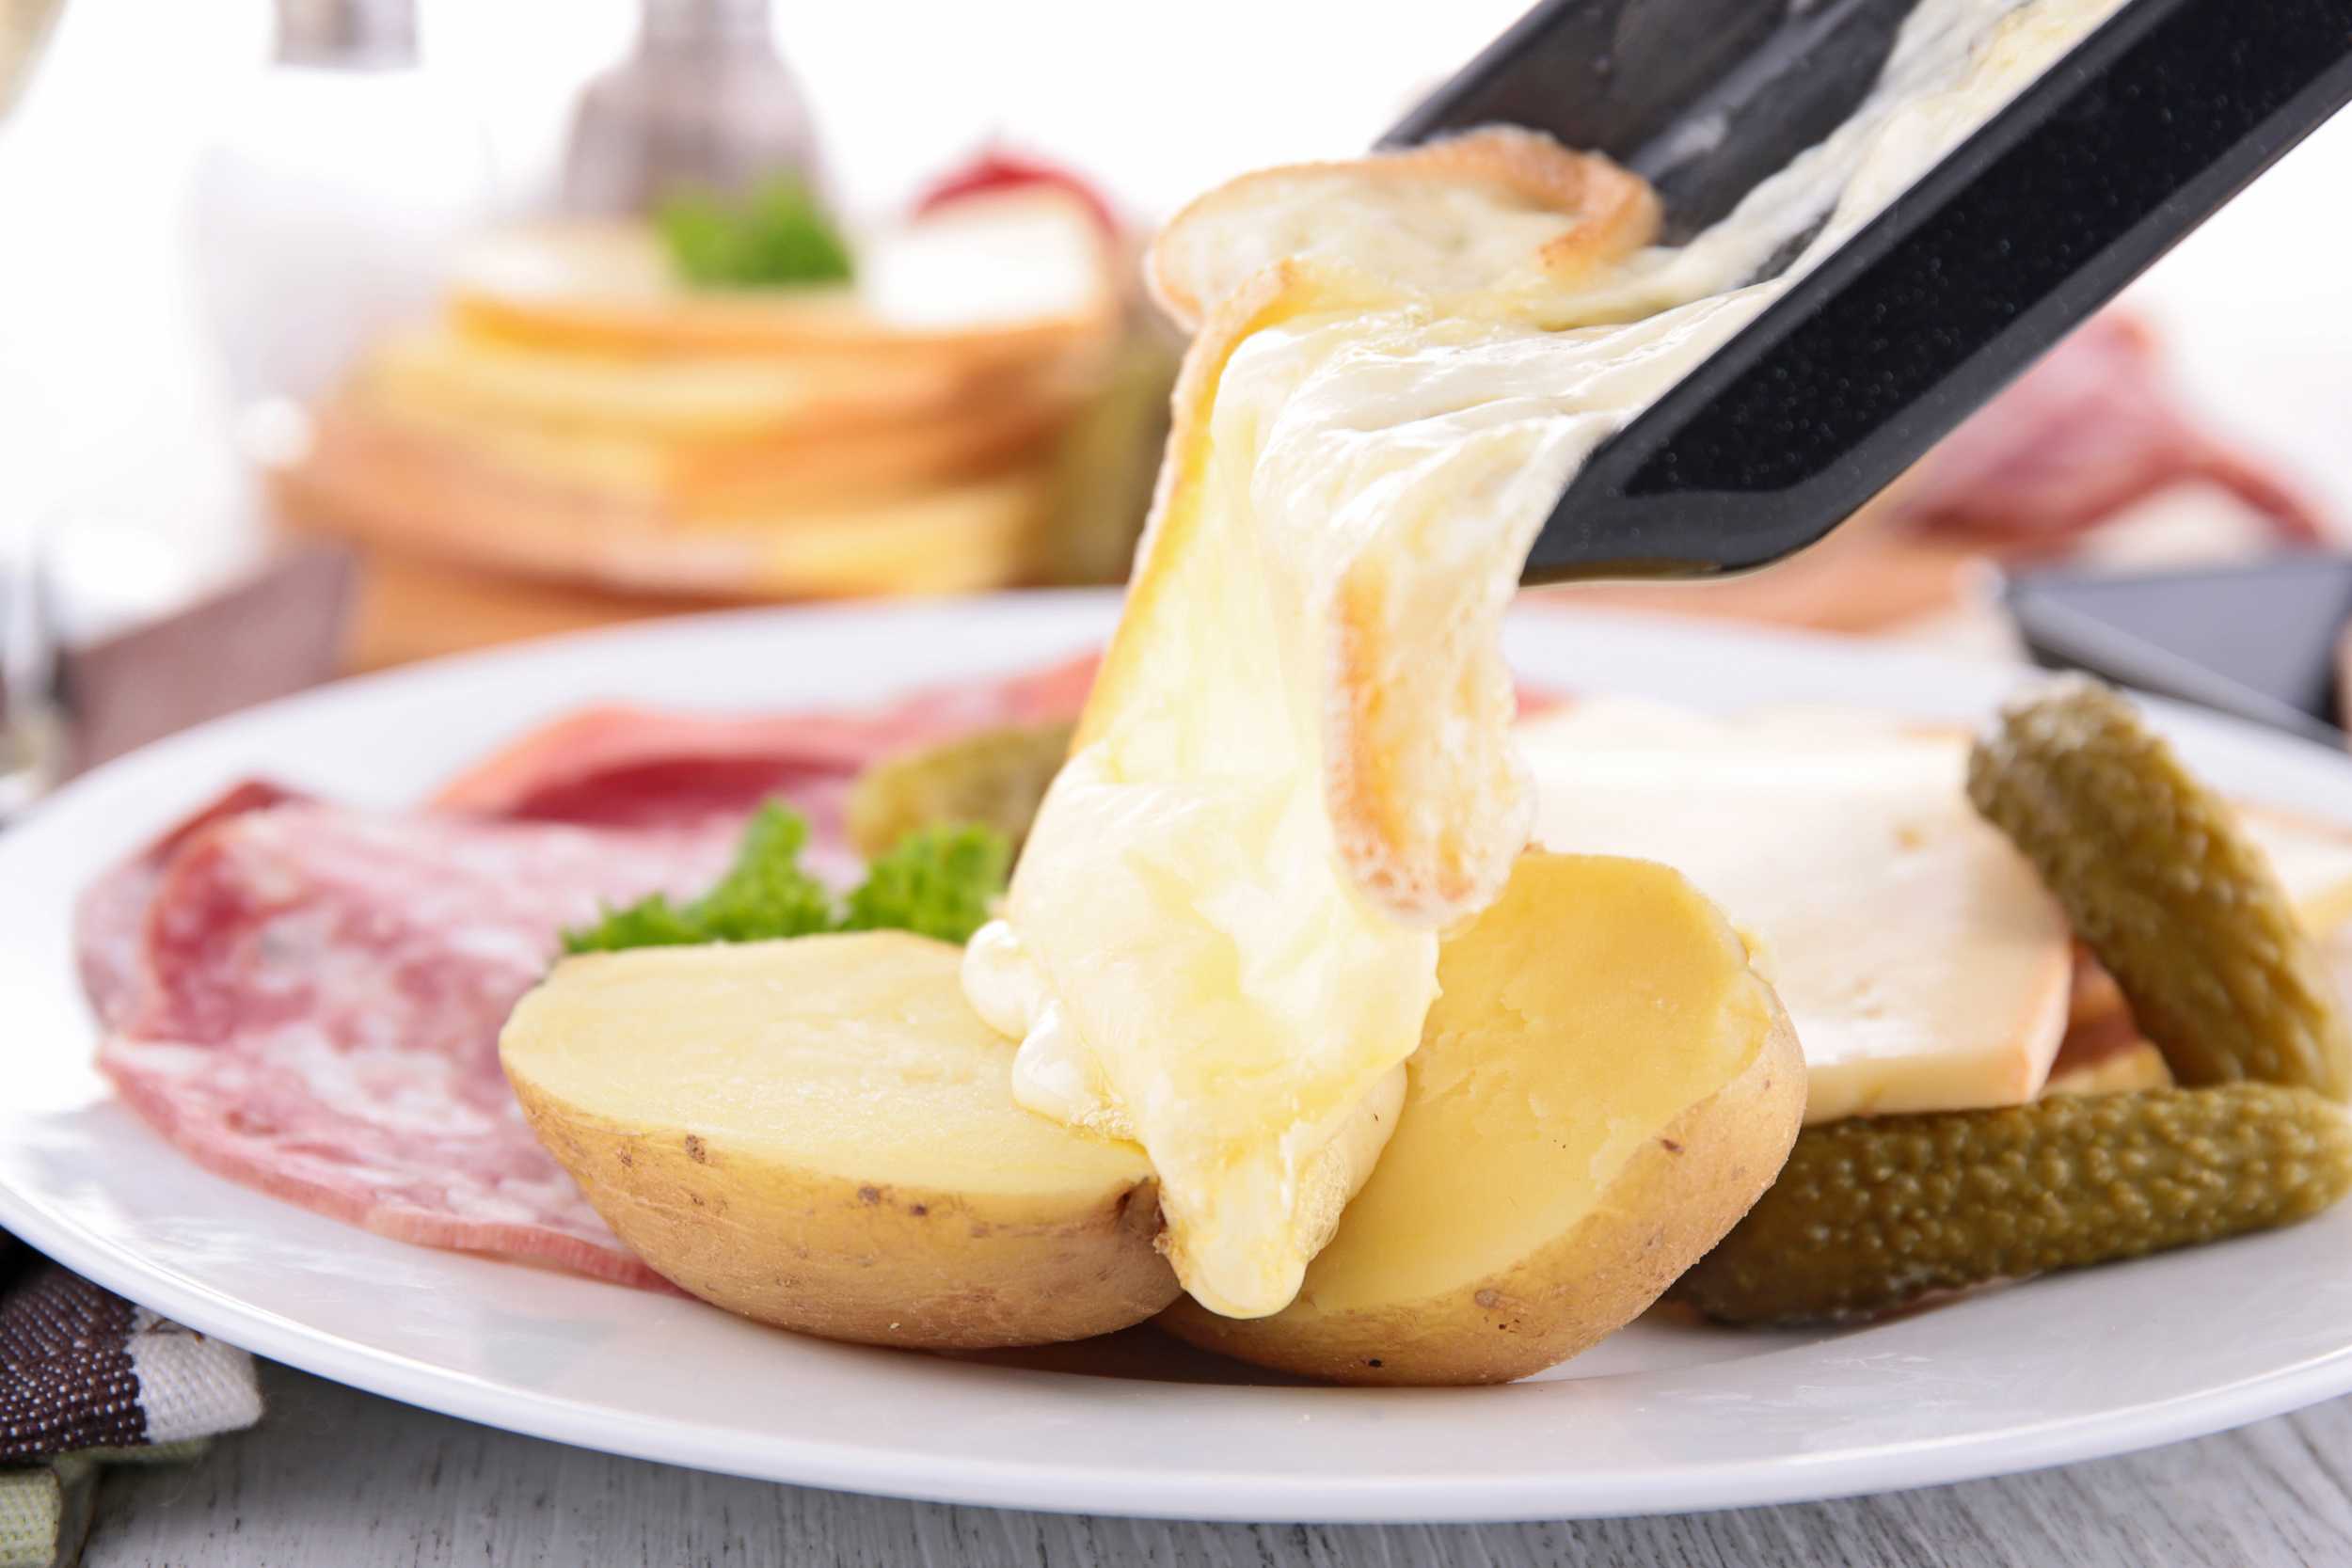 Чем полезен сыр: свойства, вещества, сколько можно, польза и вред